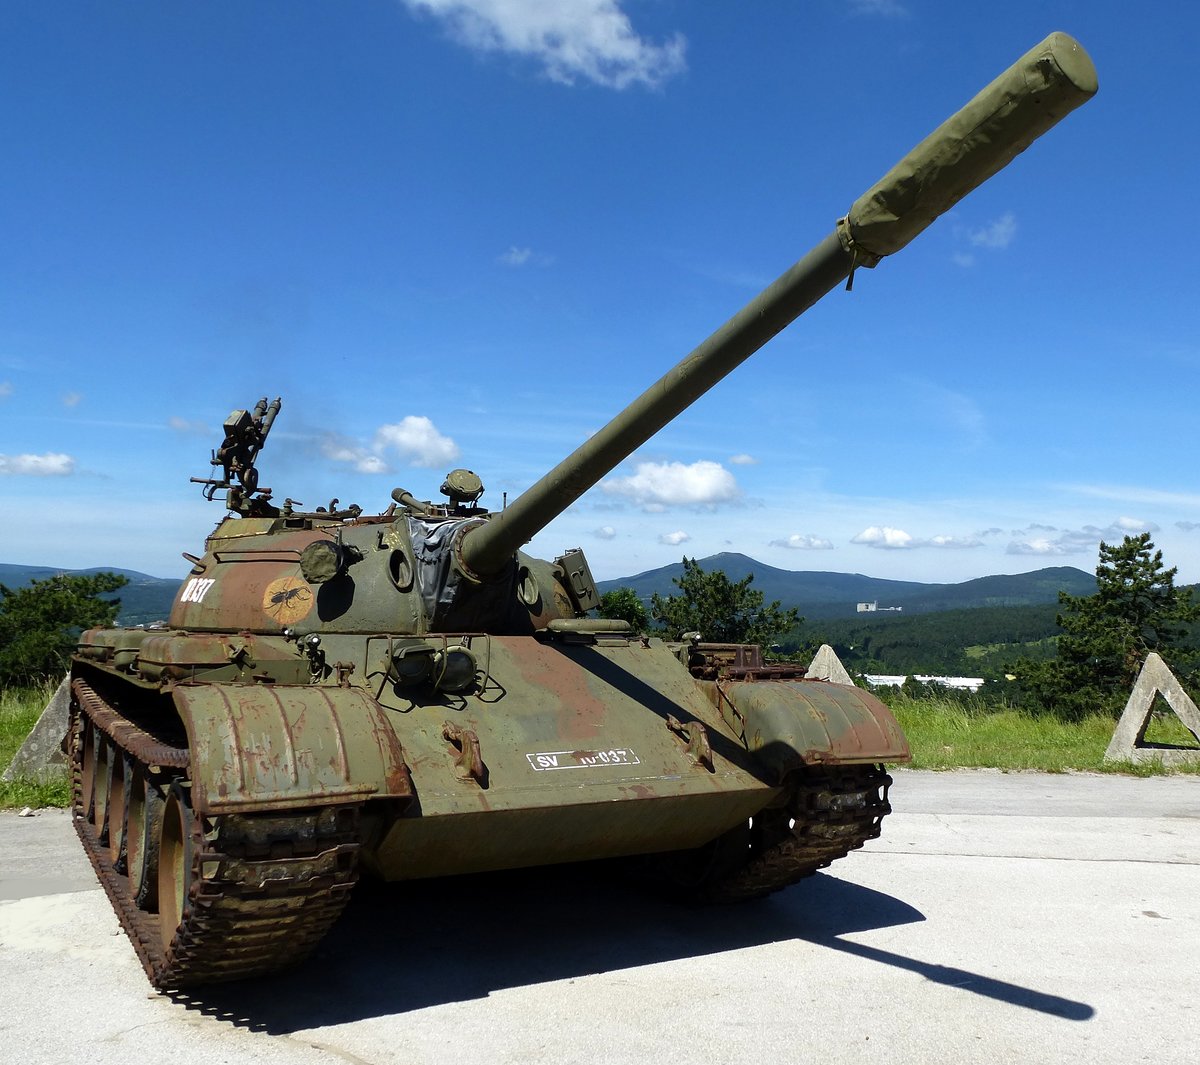 sowjetischer Kampfpanzer T-55, steht auf dem Freigelände des Militärmuseums in Pivka/Slowenien, Juni 2016